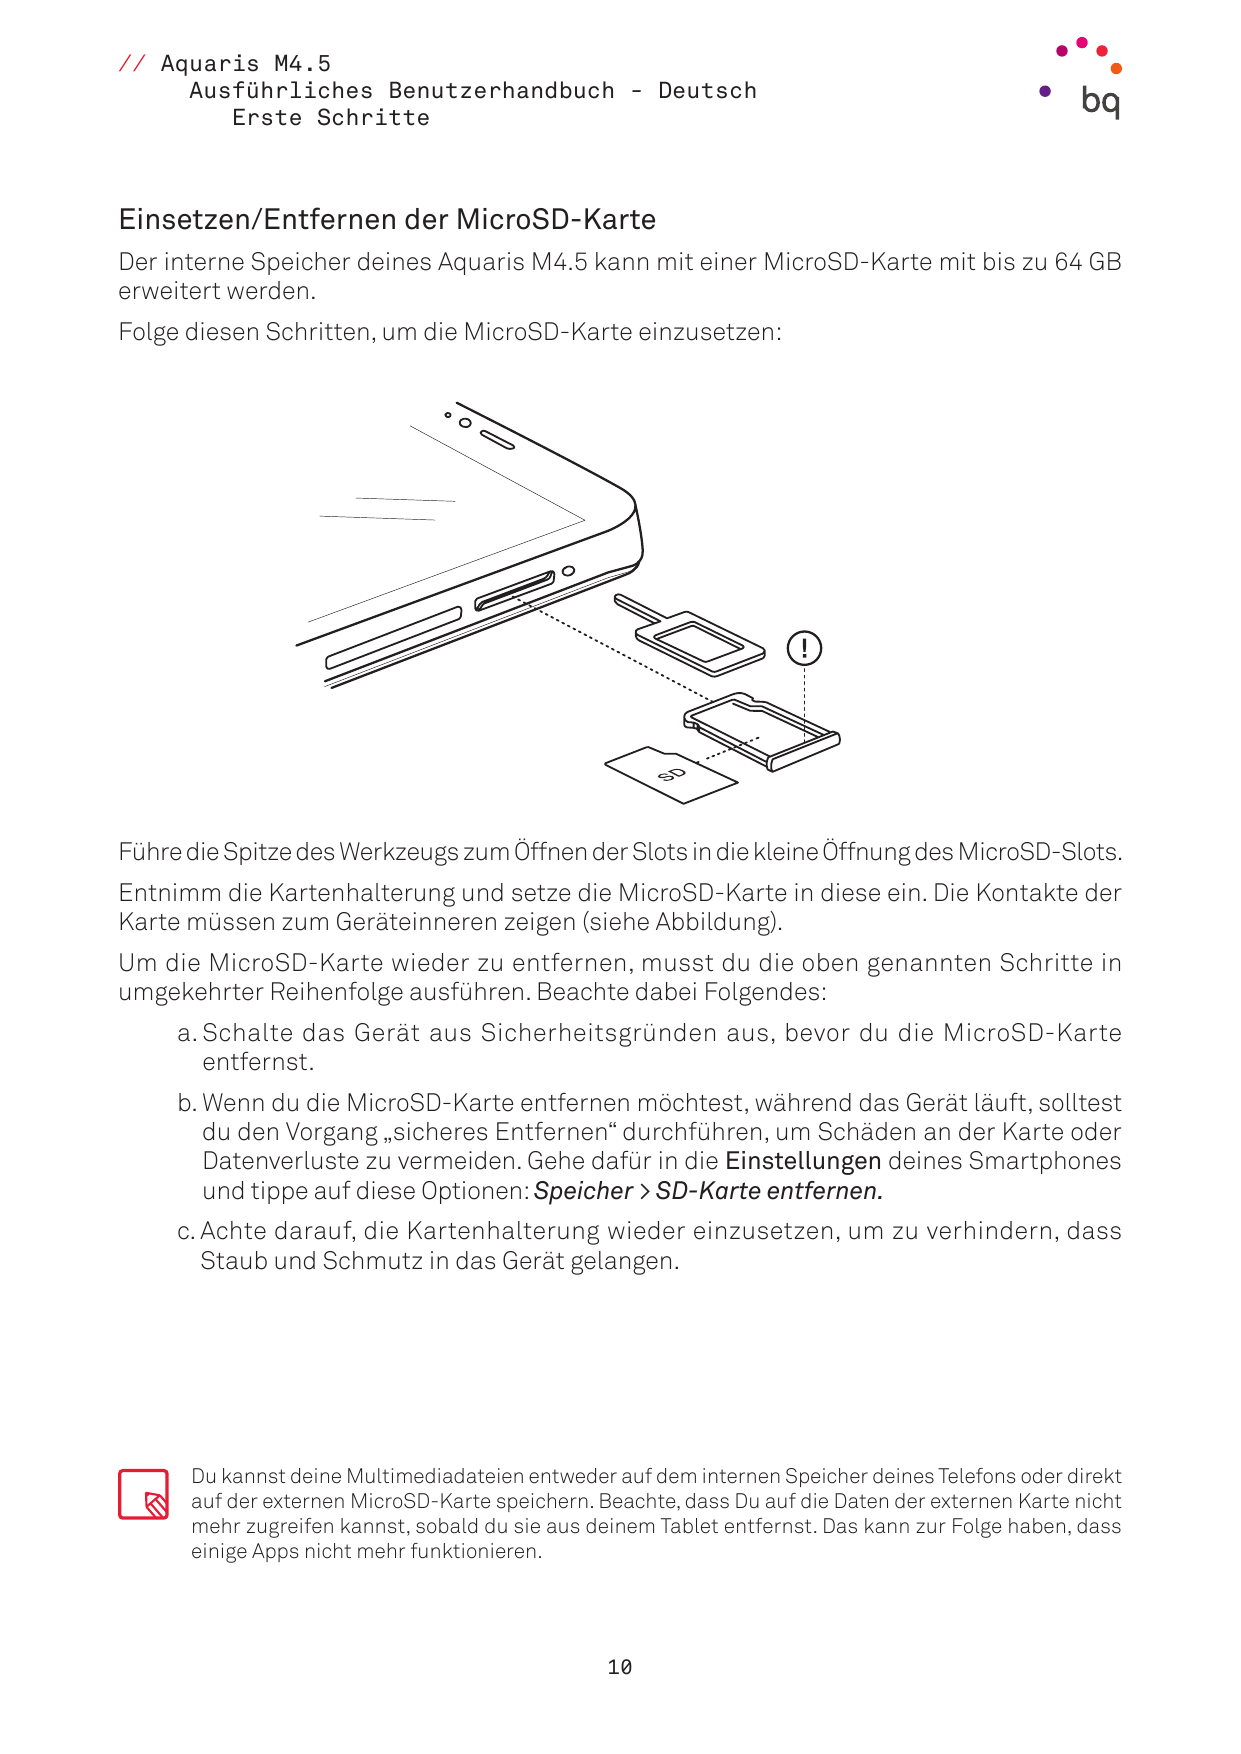 // Aquaris M4.5Ausführliches Benutzerhandbuch - DeutschErste SchritteEinsetzen/Entfernen der MicroSD-KarteDer interne Speicher d